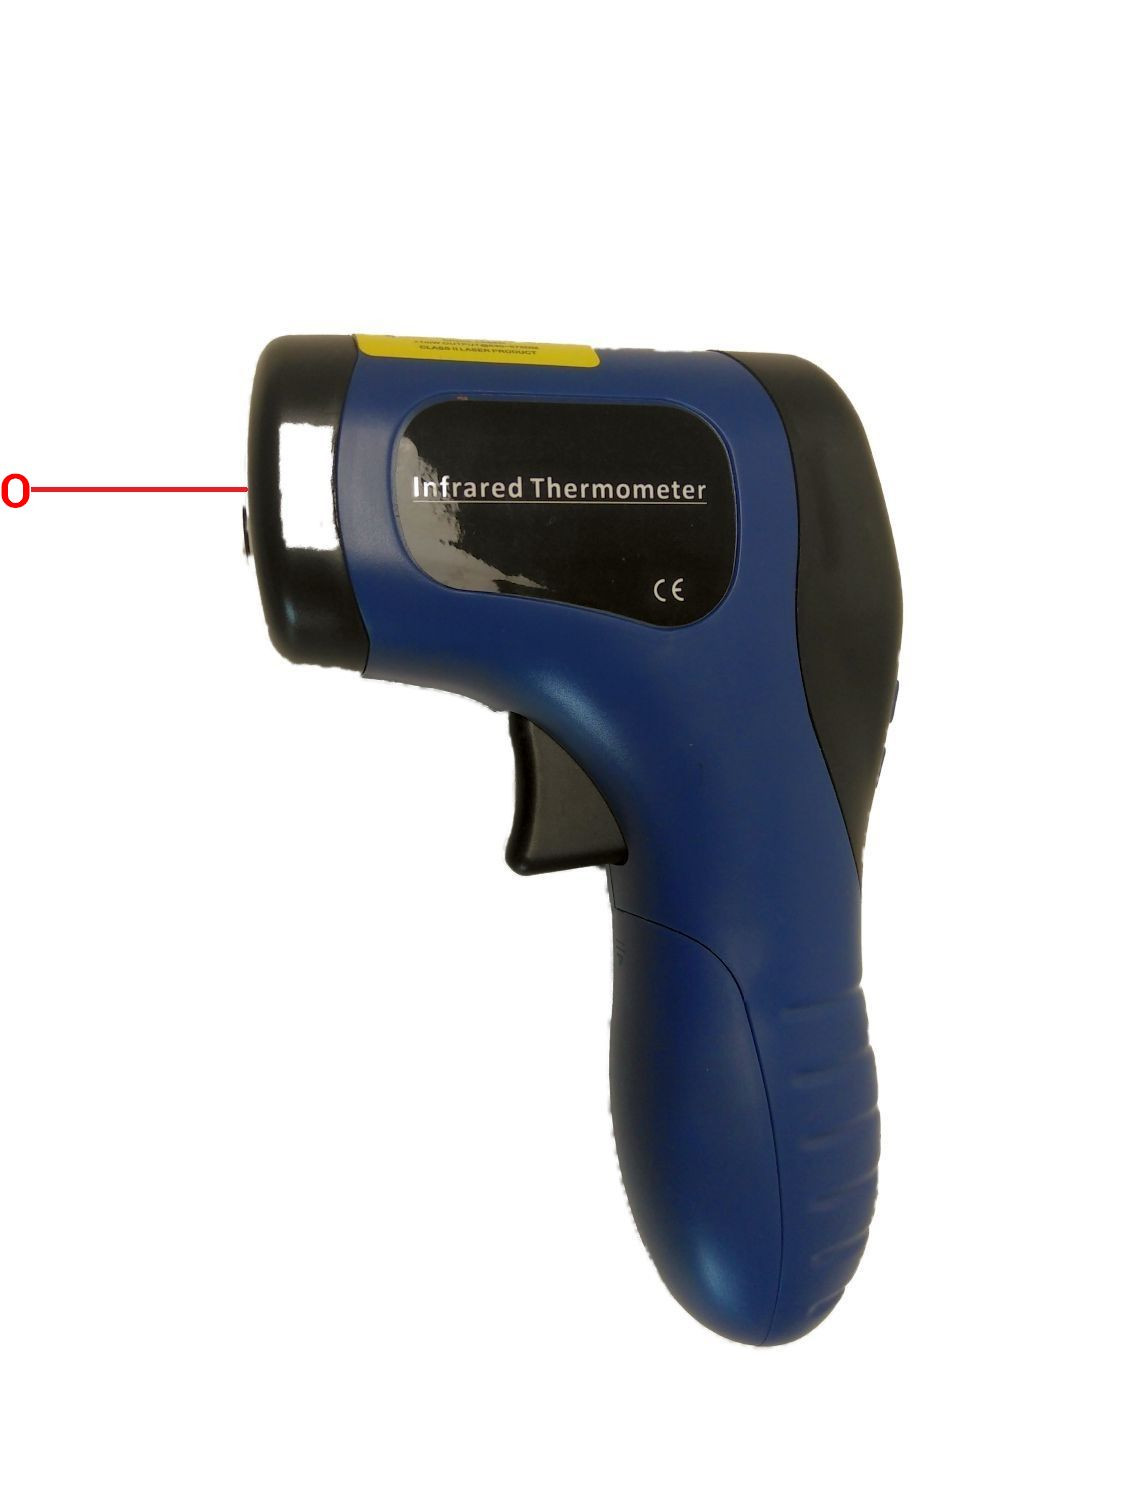 Digital Laser Thermometer Temperaturmeßgerät Wärme Messgerät